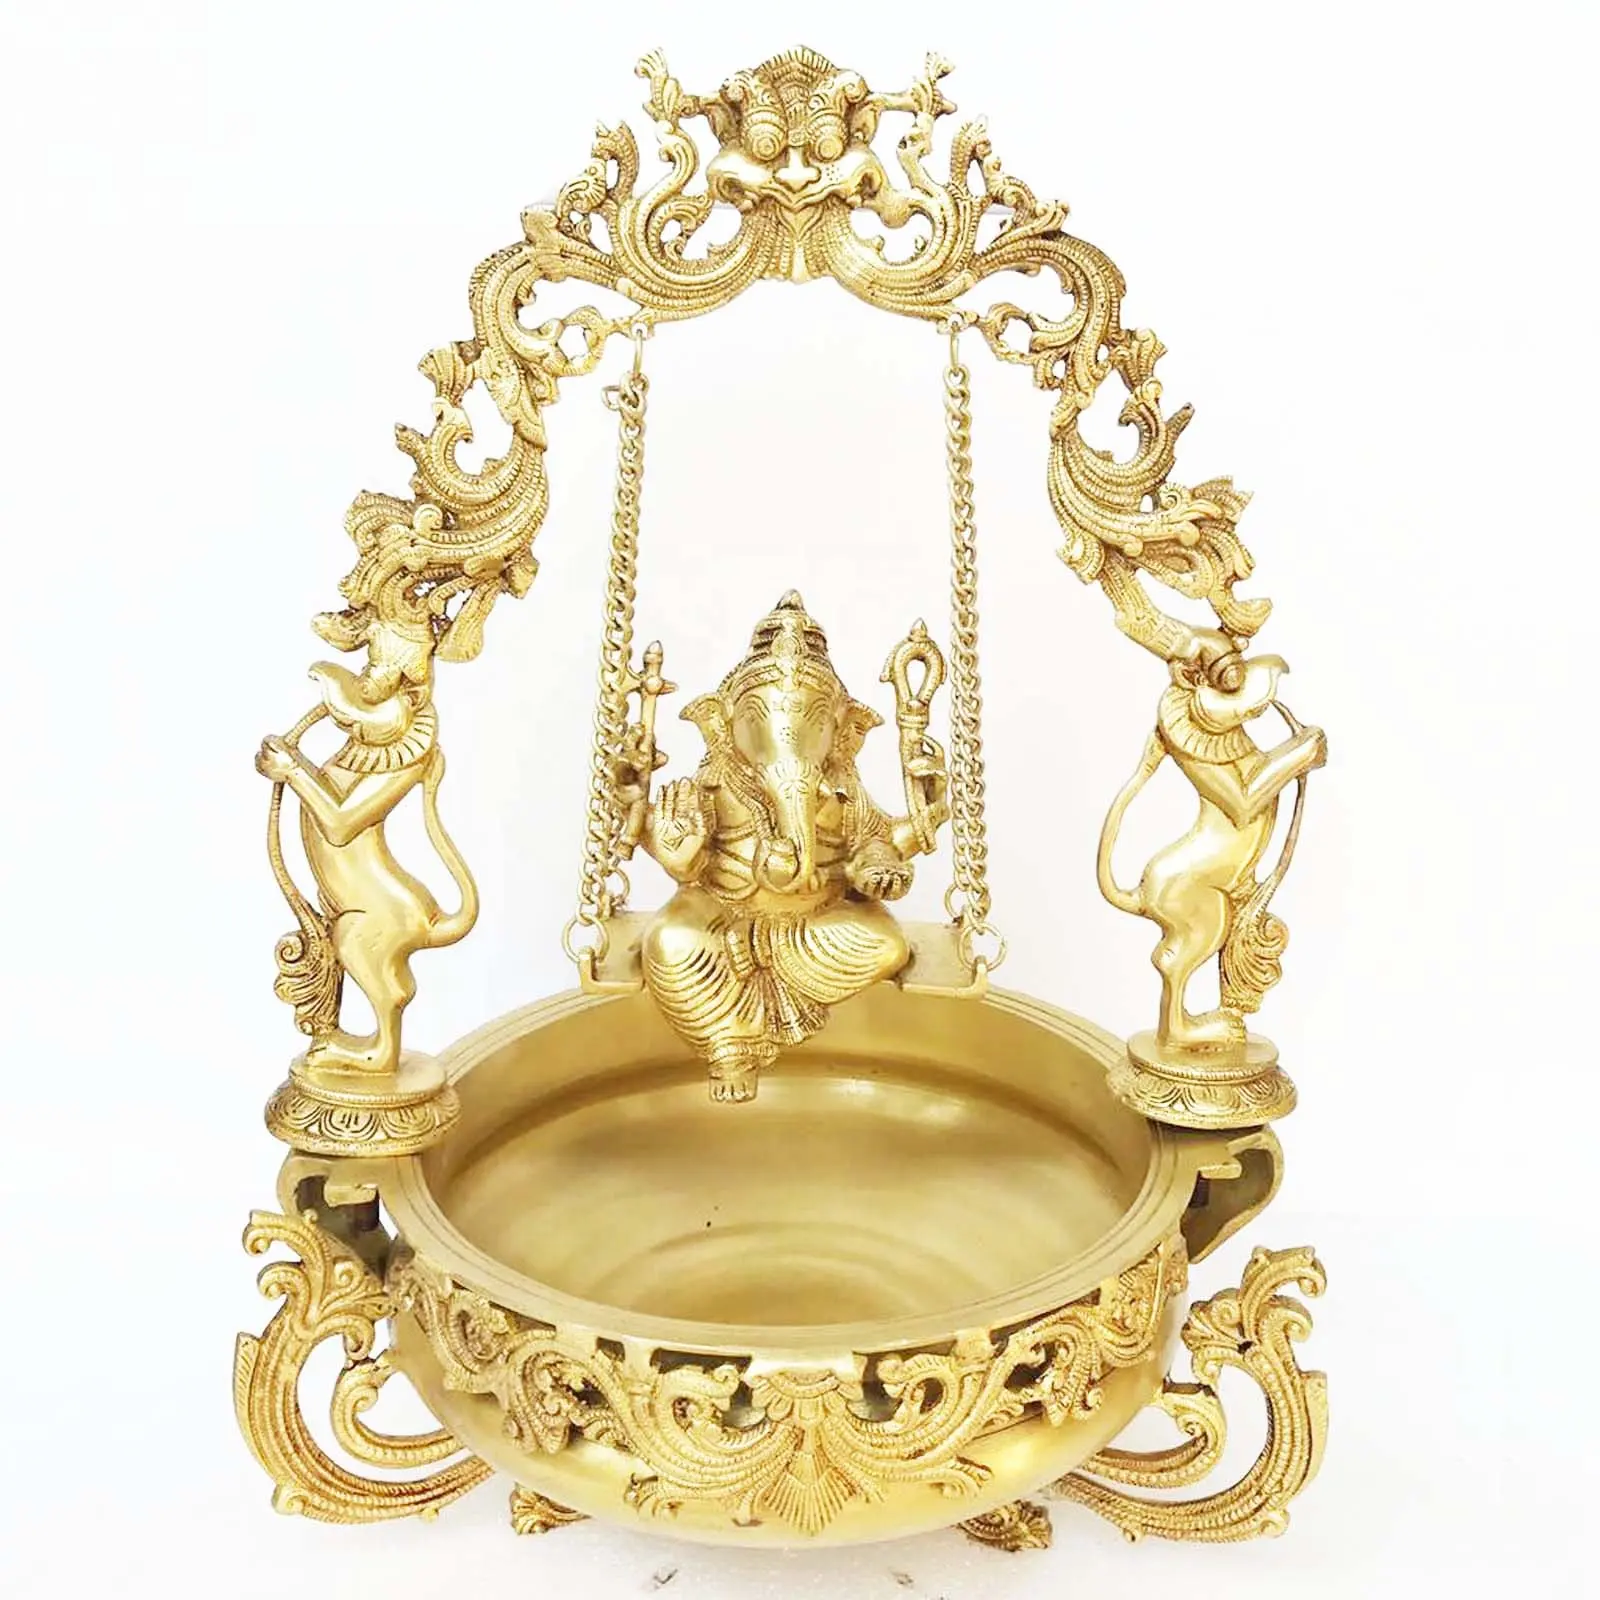 Messing Gemaakt Lord Ganesha Op Swing Figuur Home/Event Decor Urli Religieuze Decoratie